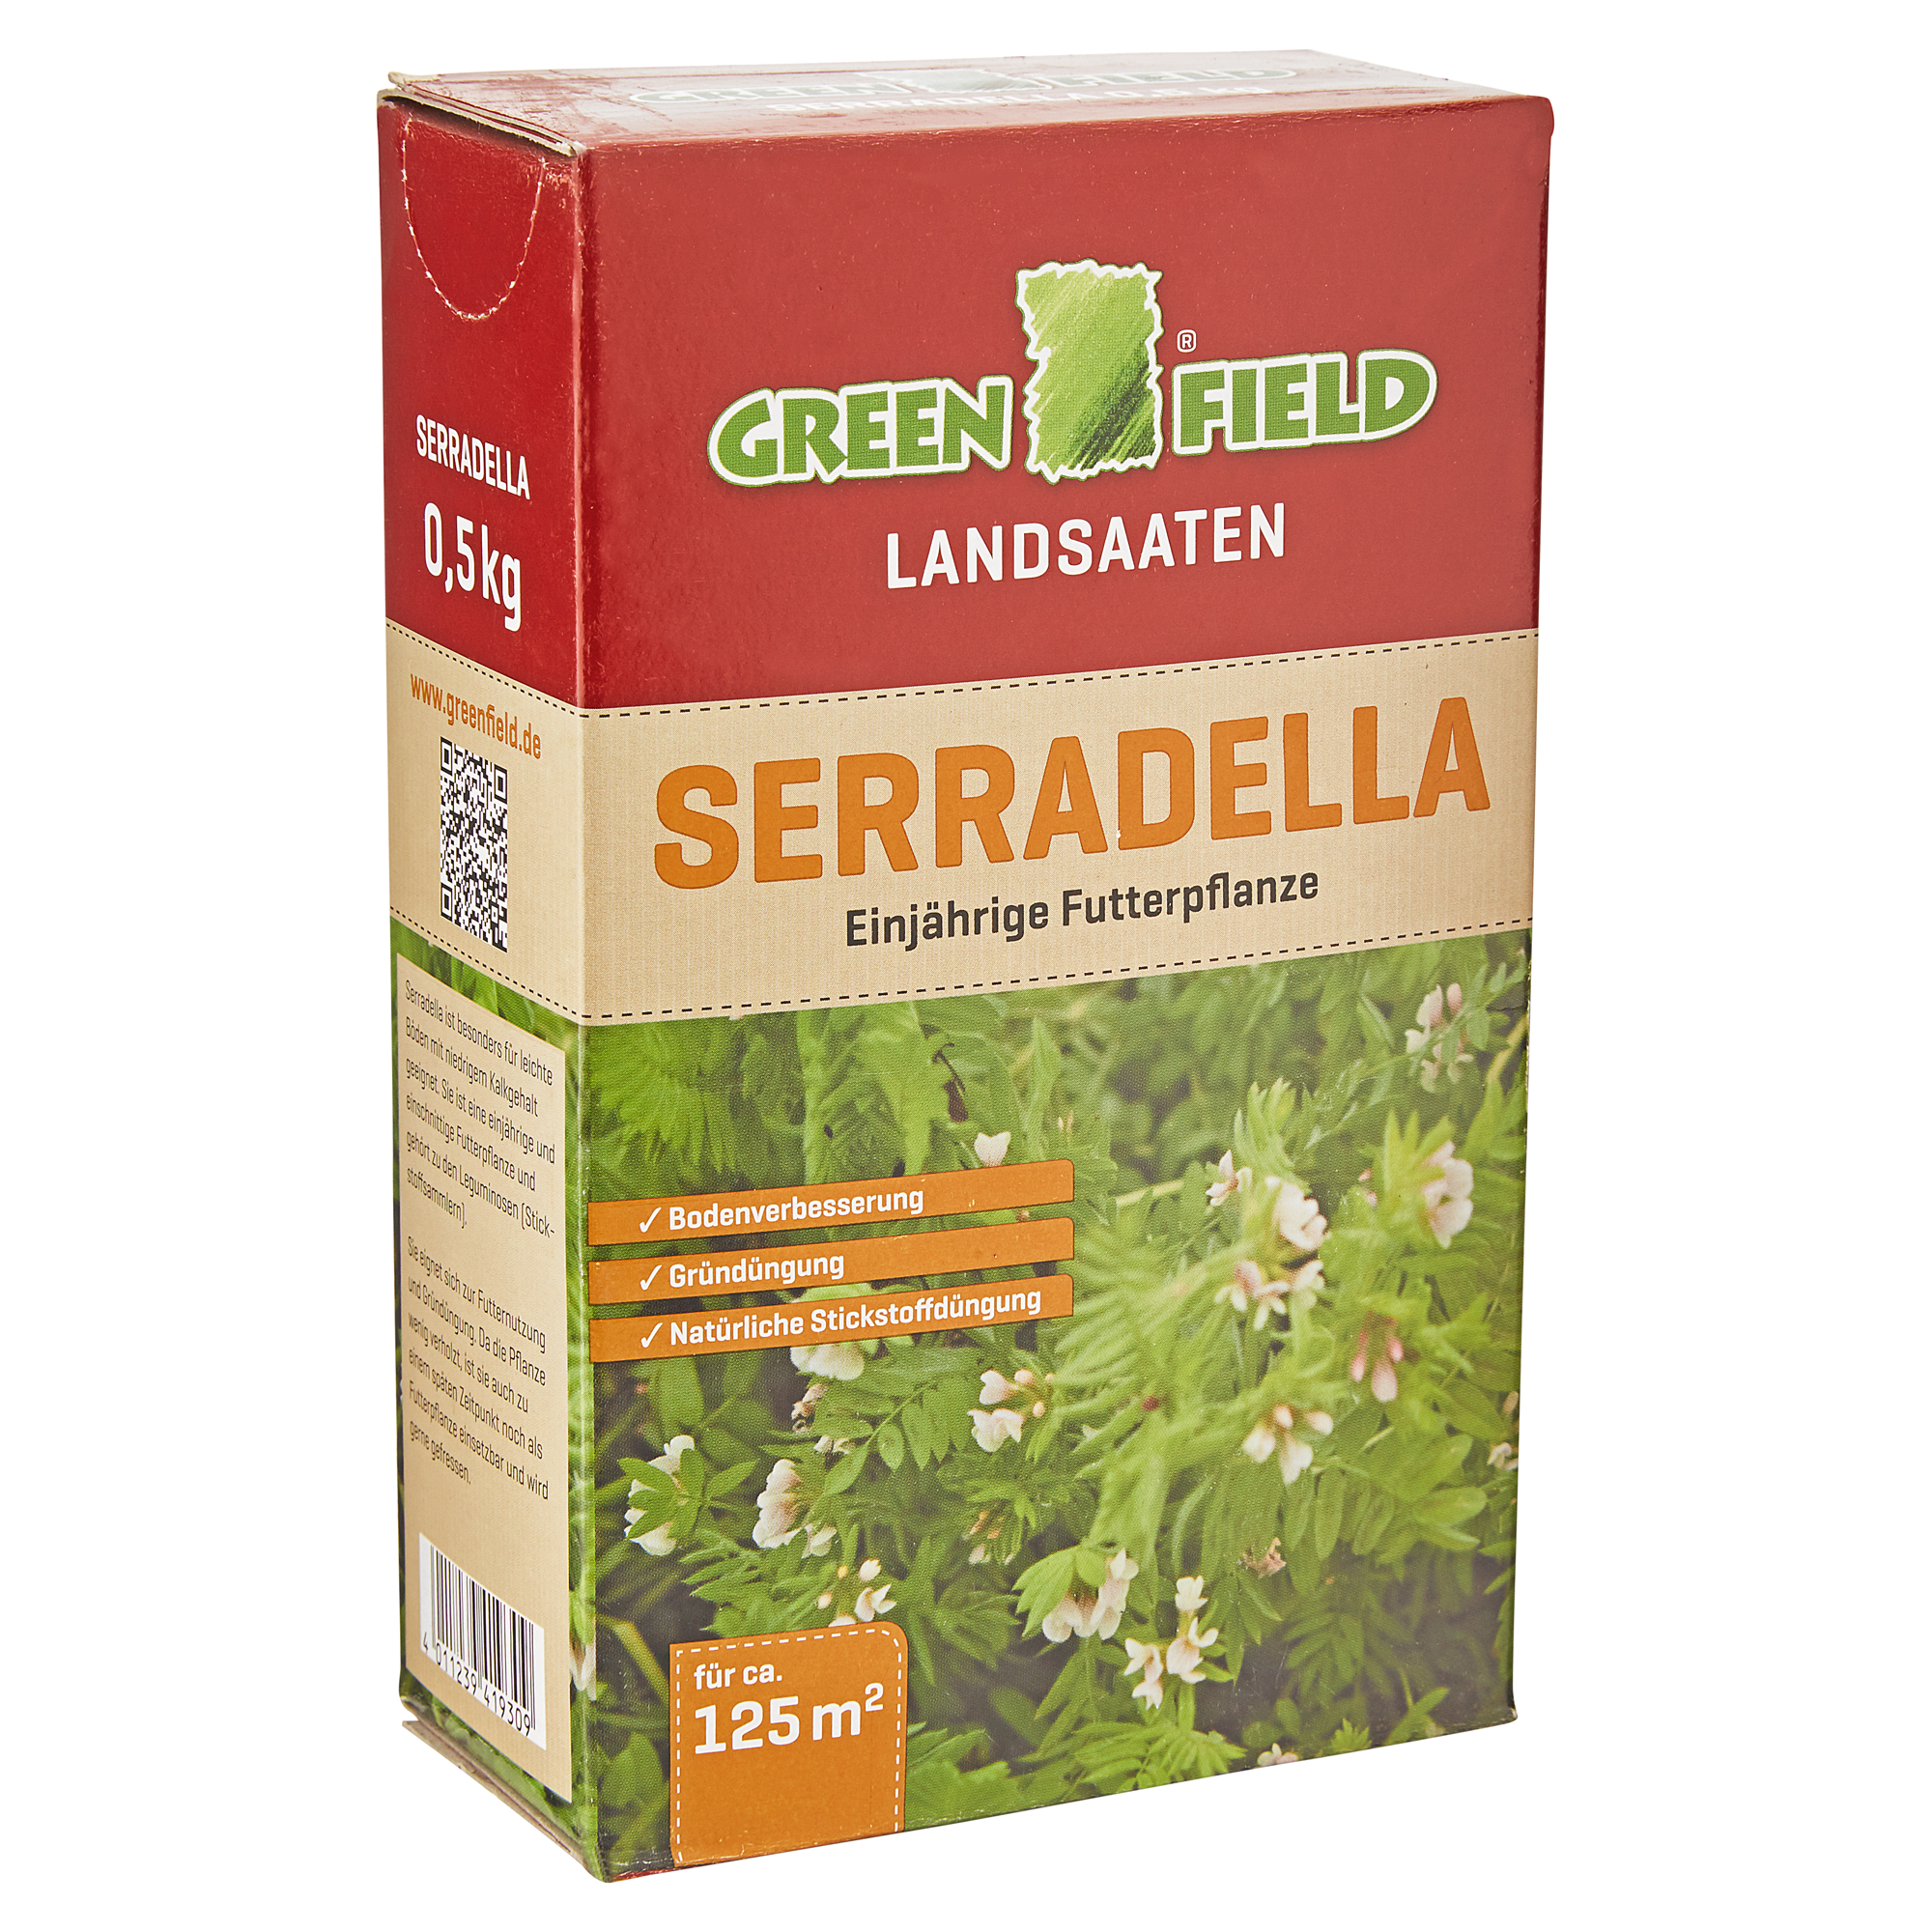 Serradella 0,5 kg + product picture